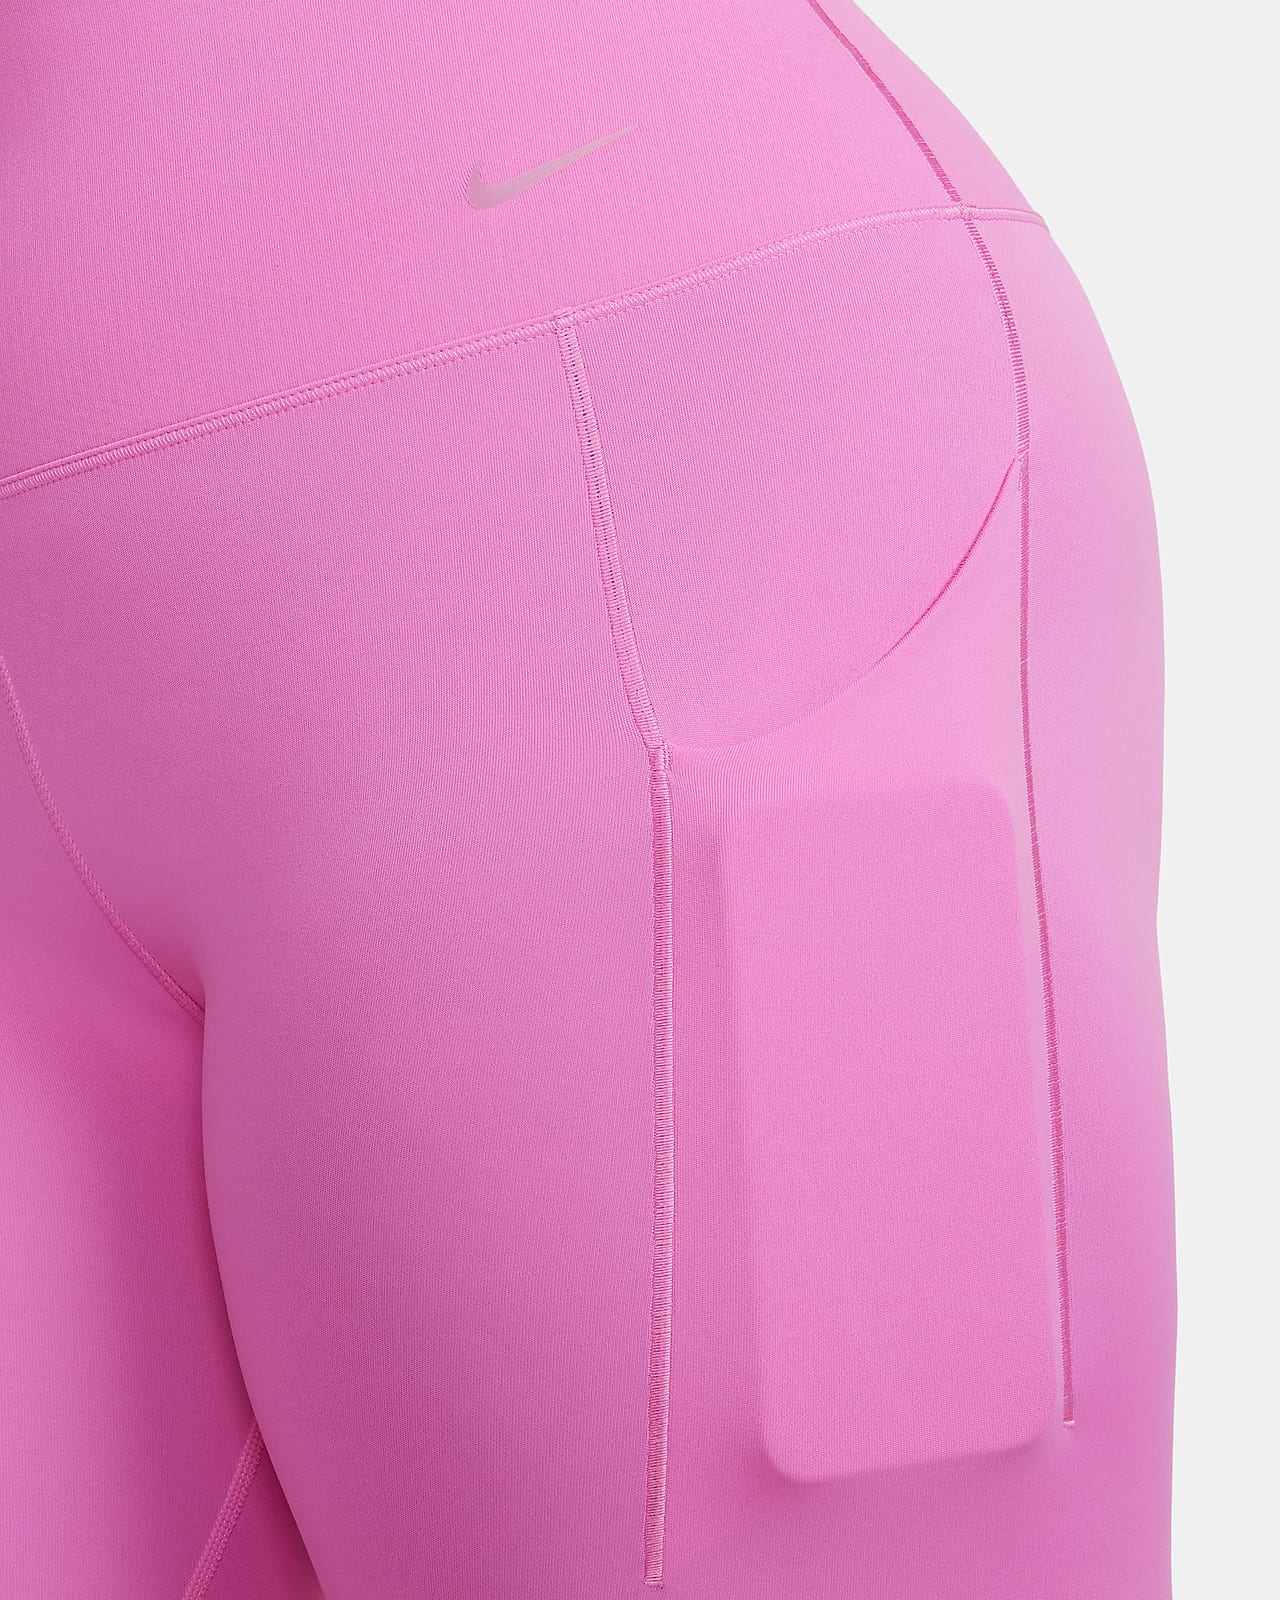 Nike Universa Orta Destekli Normal Belli Cepli Tam Boy Kadın Taytı